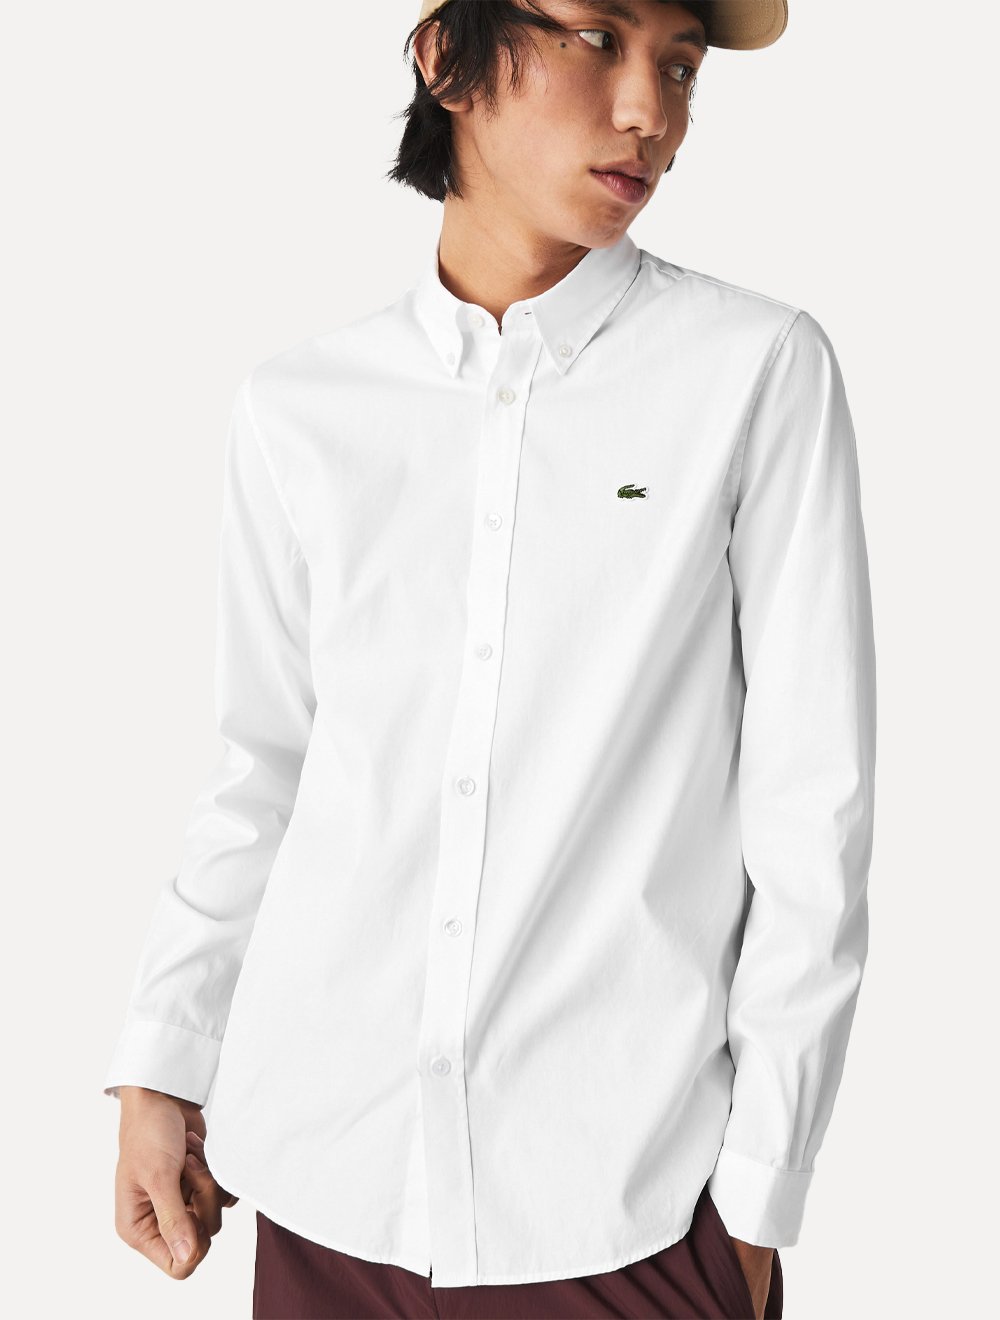 Camisa Lacoste Masculina Regular Premium Cotton Branca